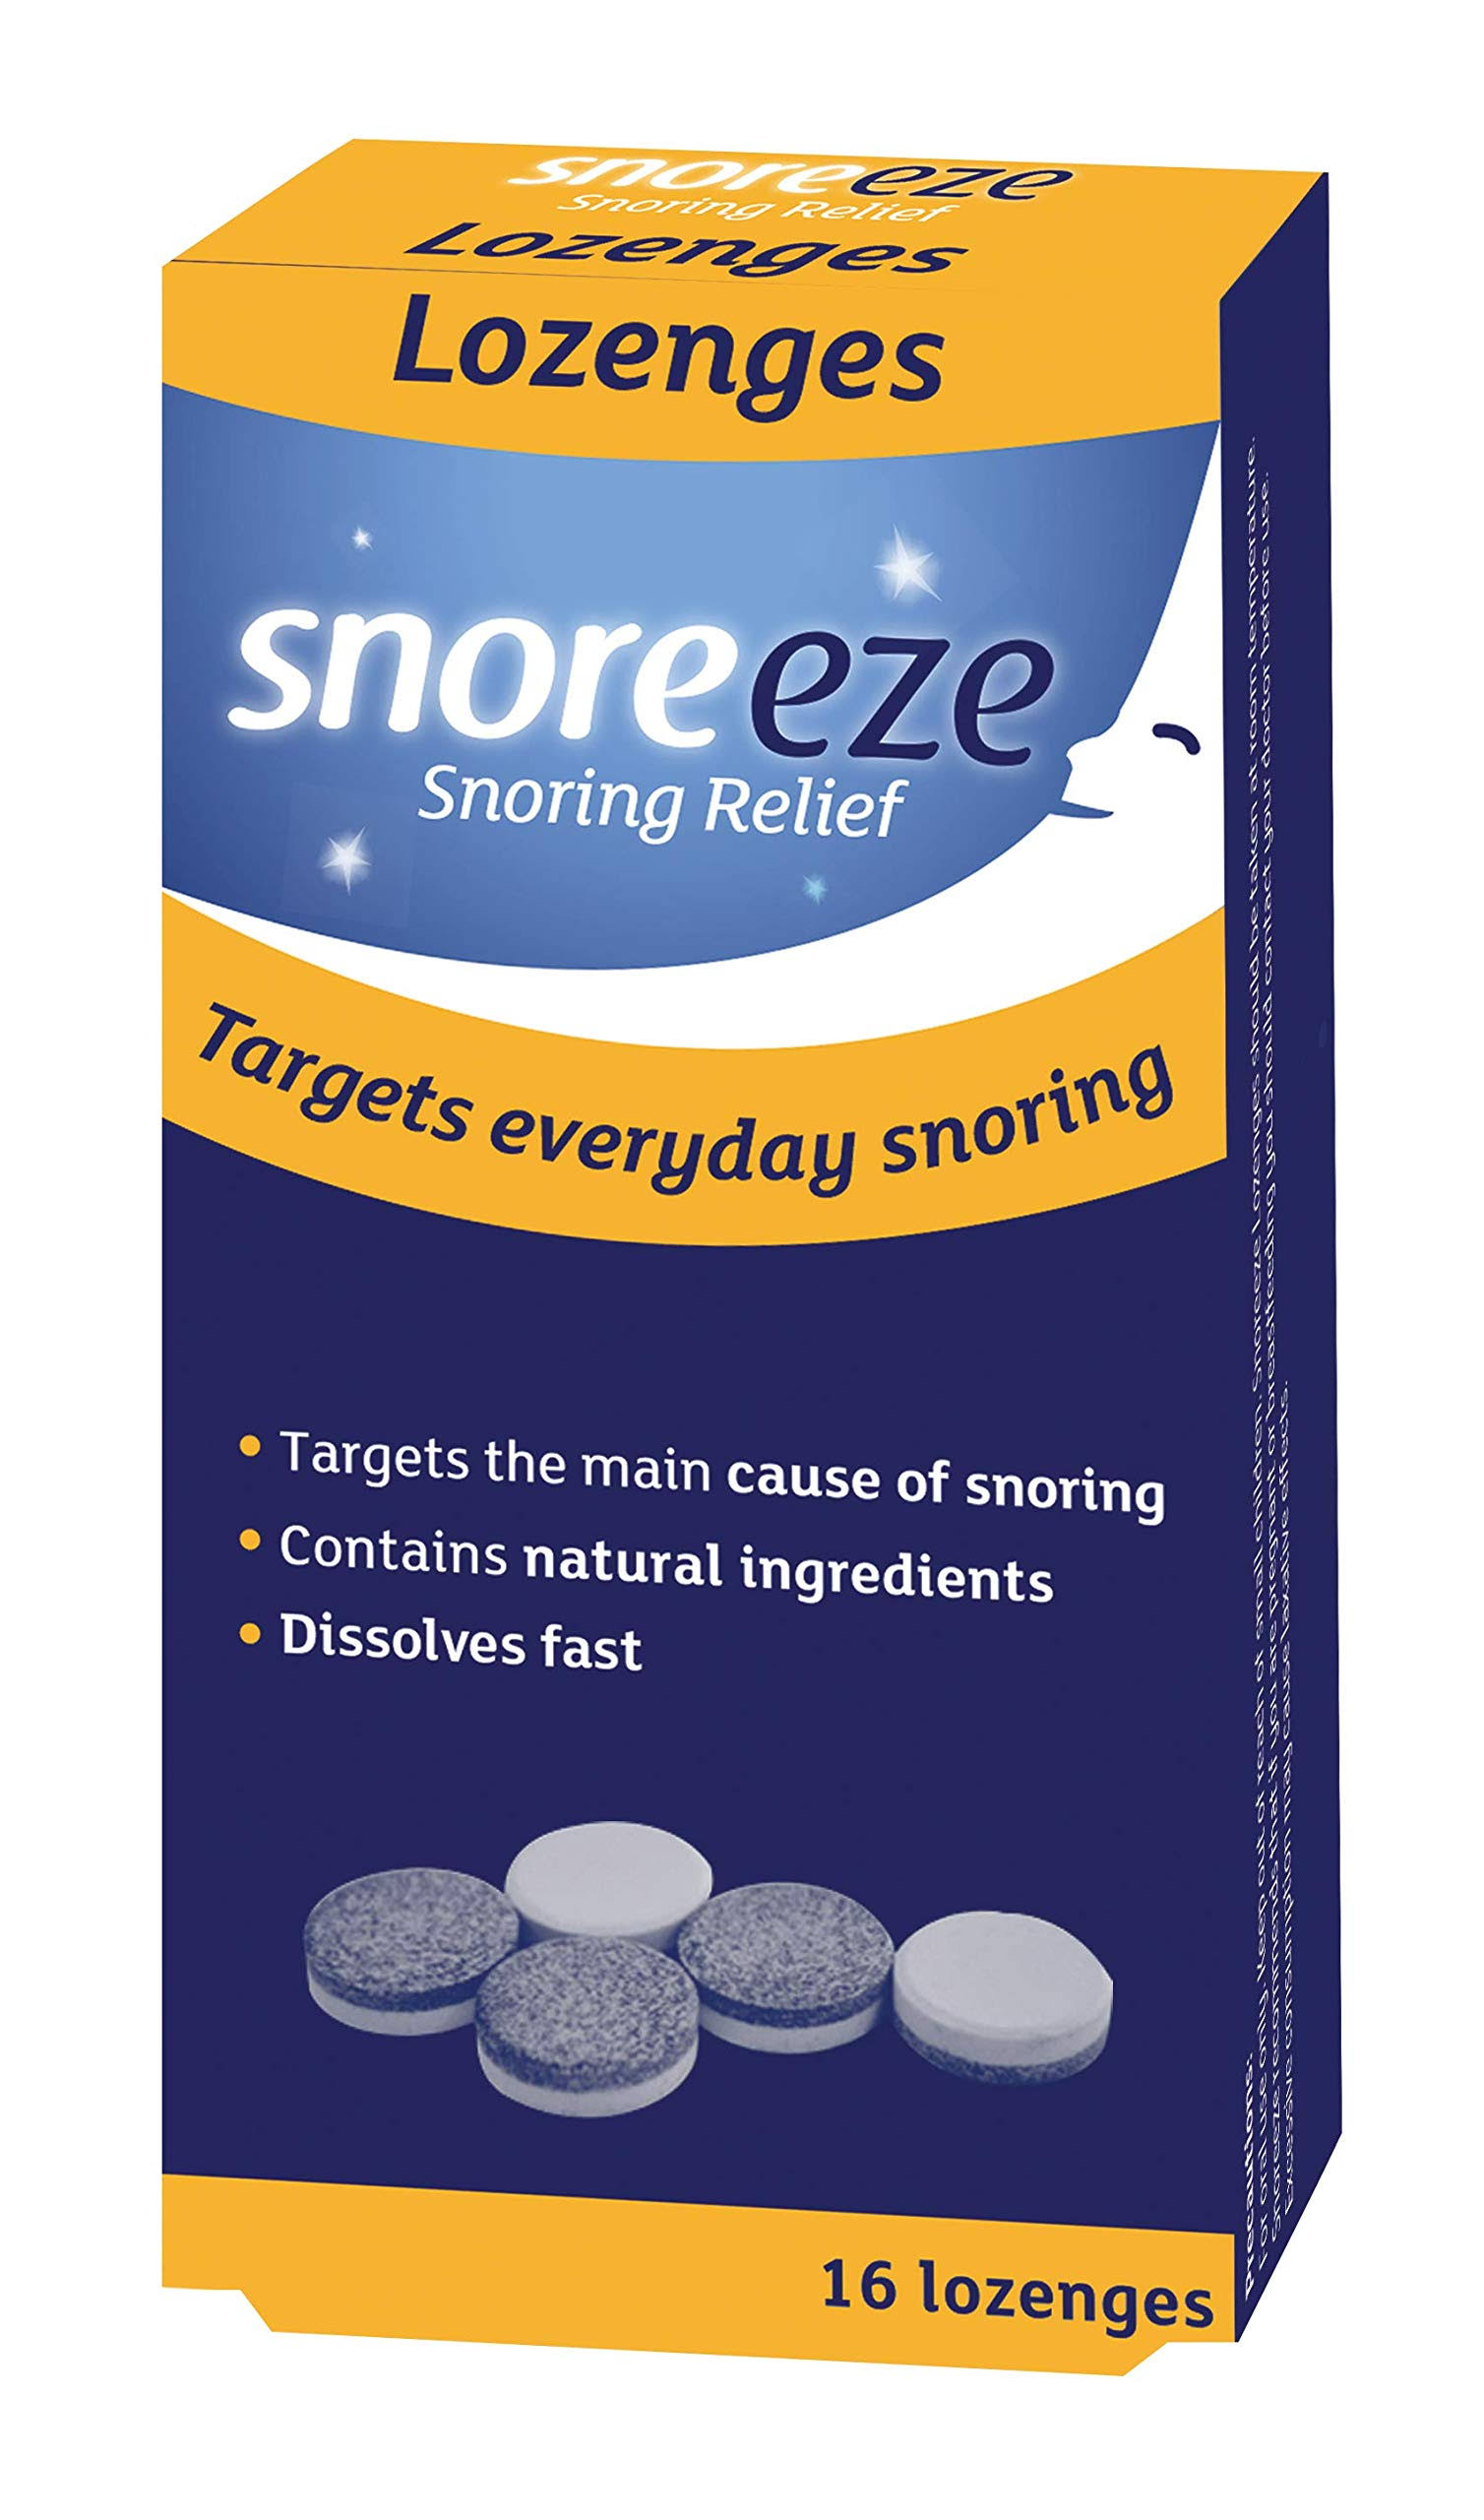 Snoreeze Snoring Relief Lozenges - 16 Lozenges